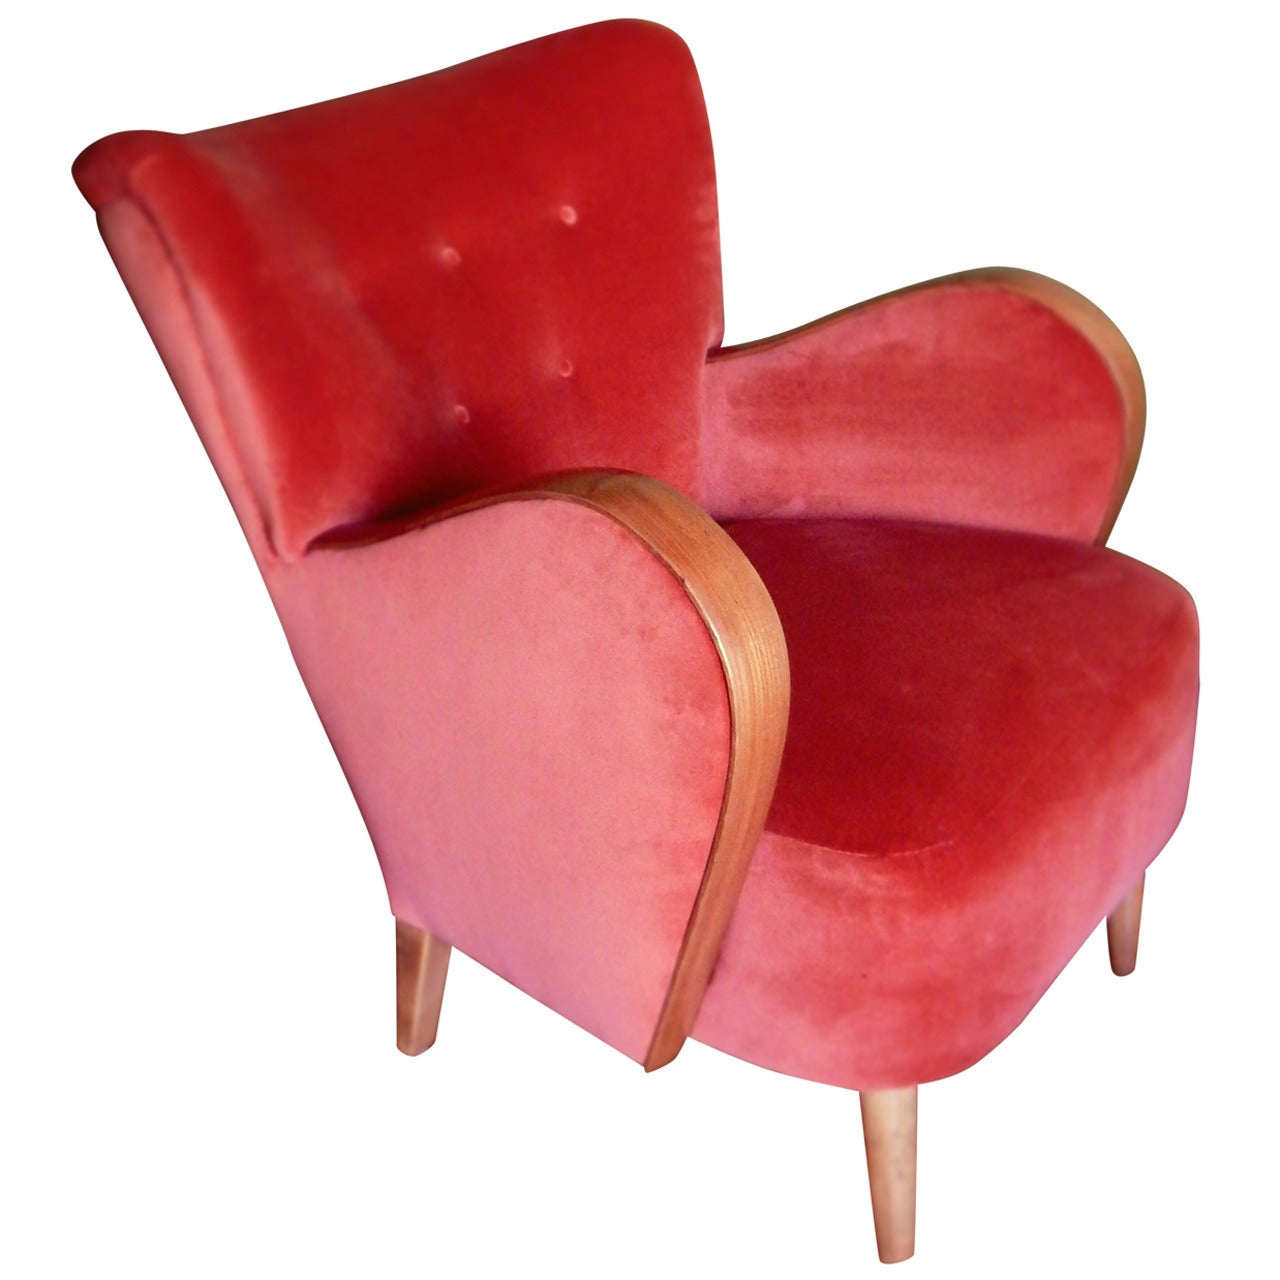 Swedish Modernist Wingback Chair in Orange Velvet, circa 1940 For Sale